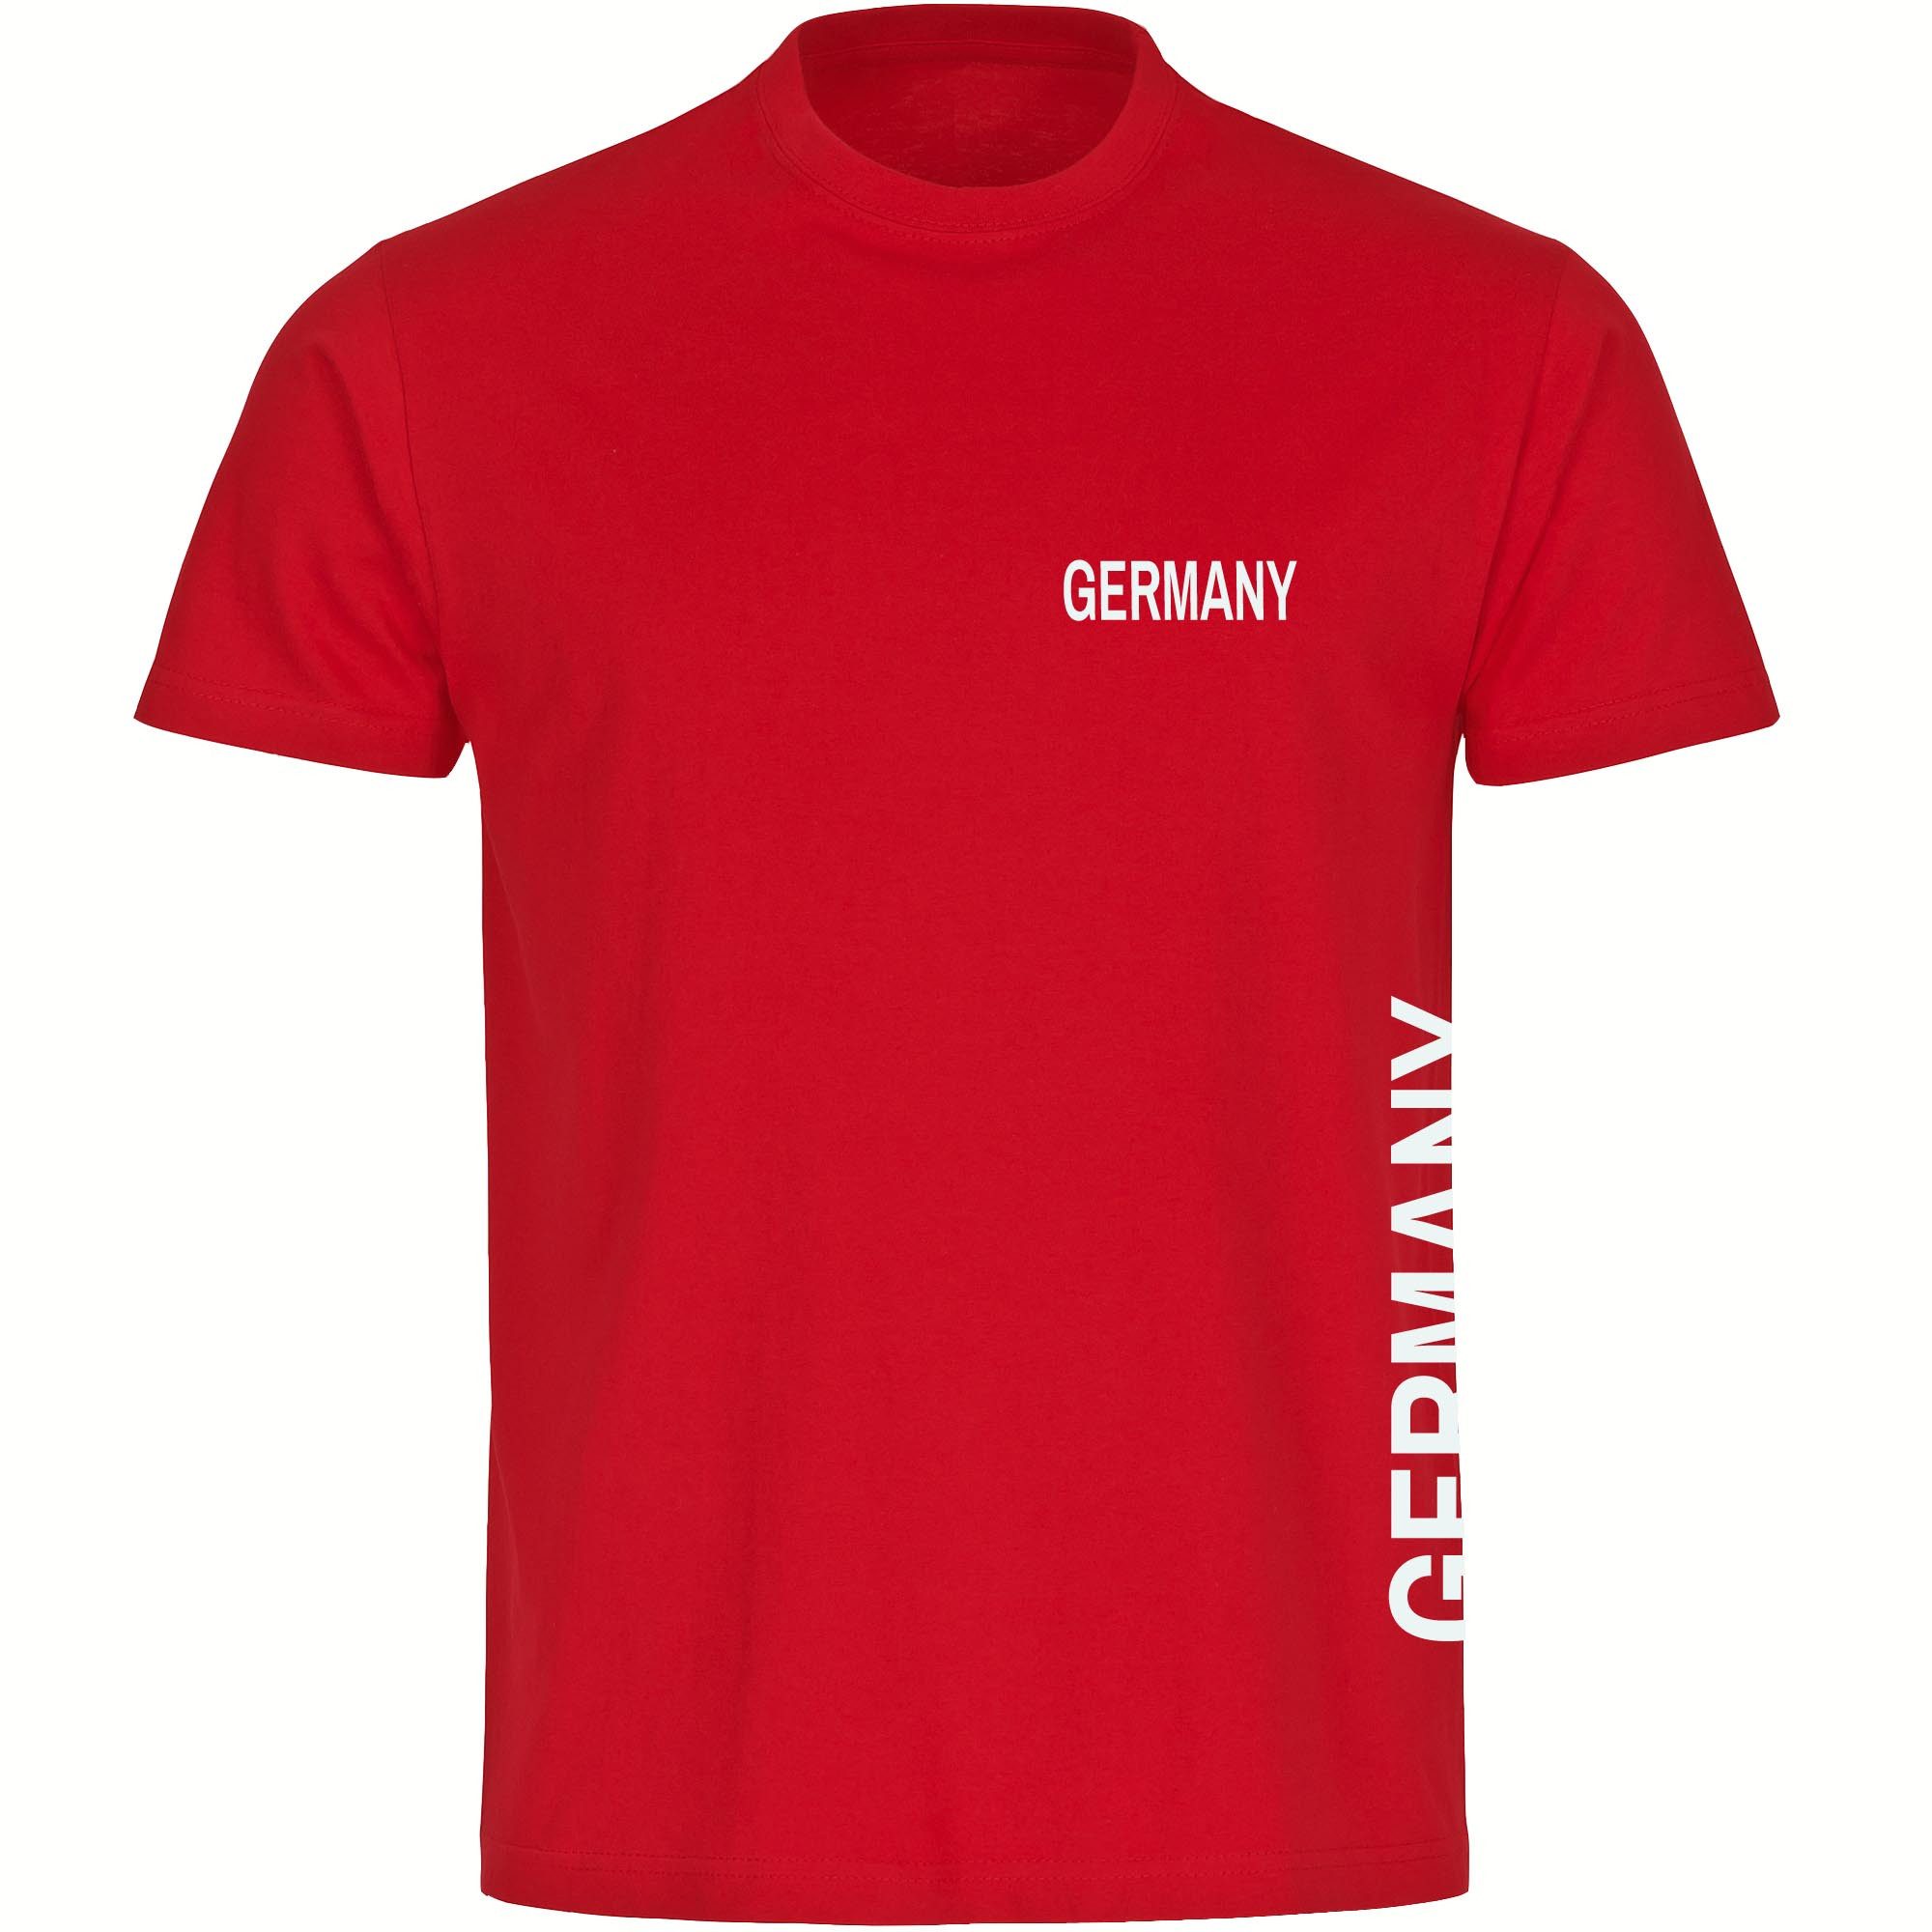 multifanshop T-Shirt Herren Germany - Brust & Seite - Männer